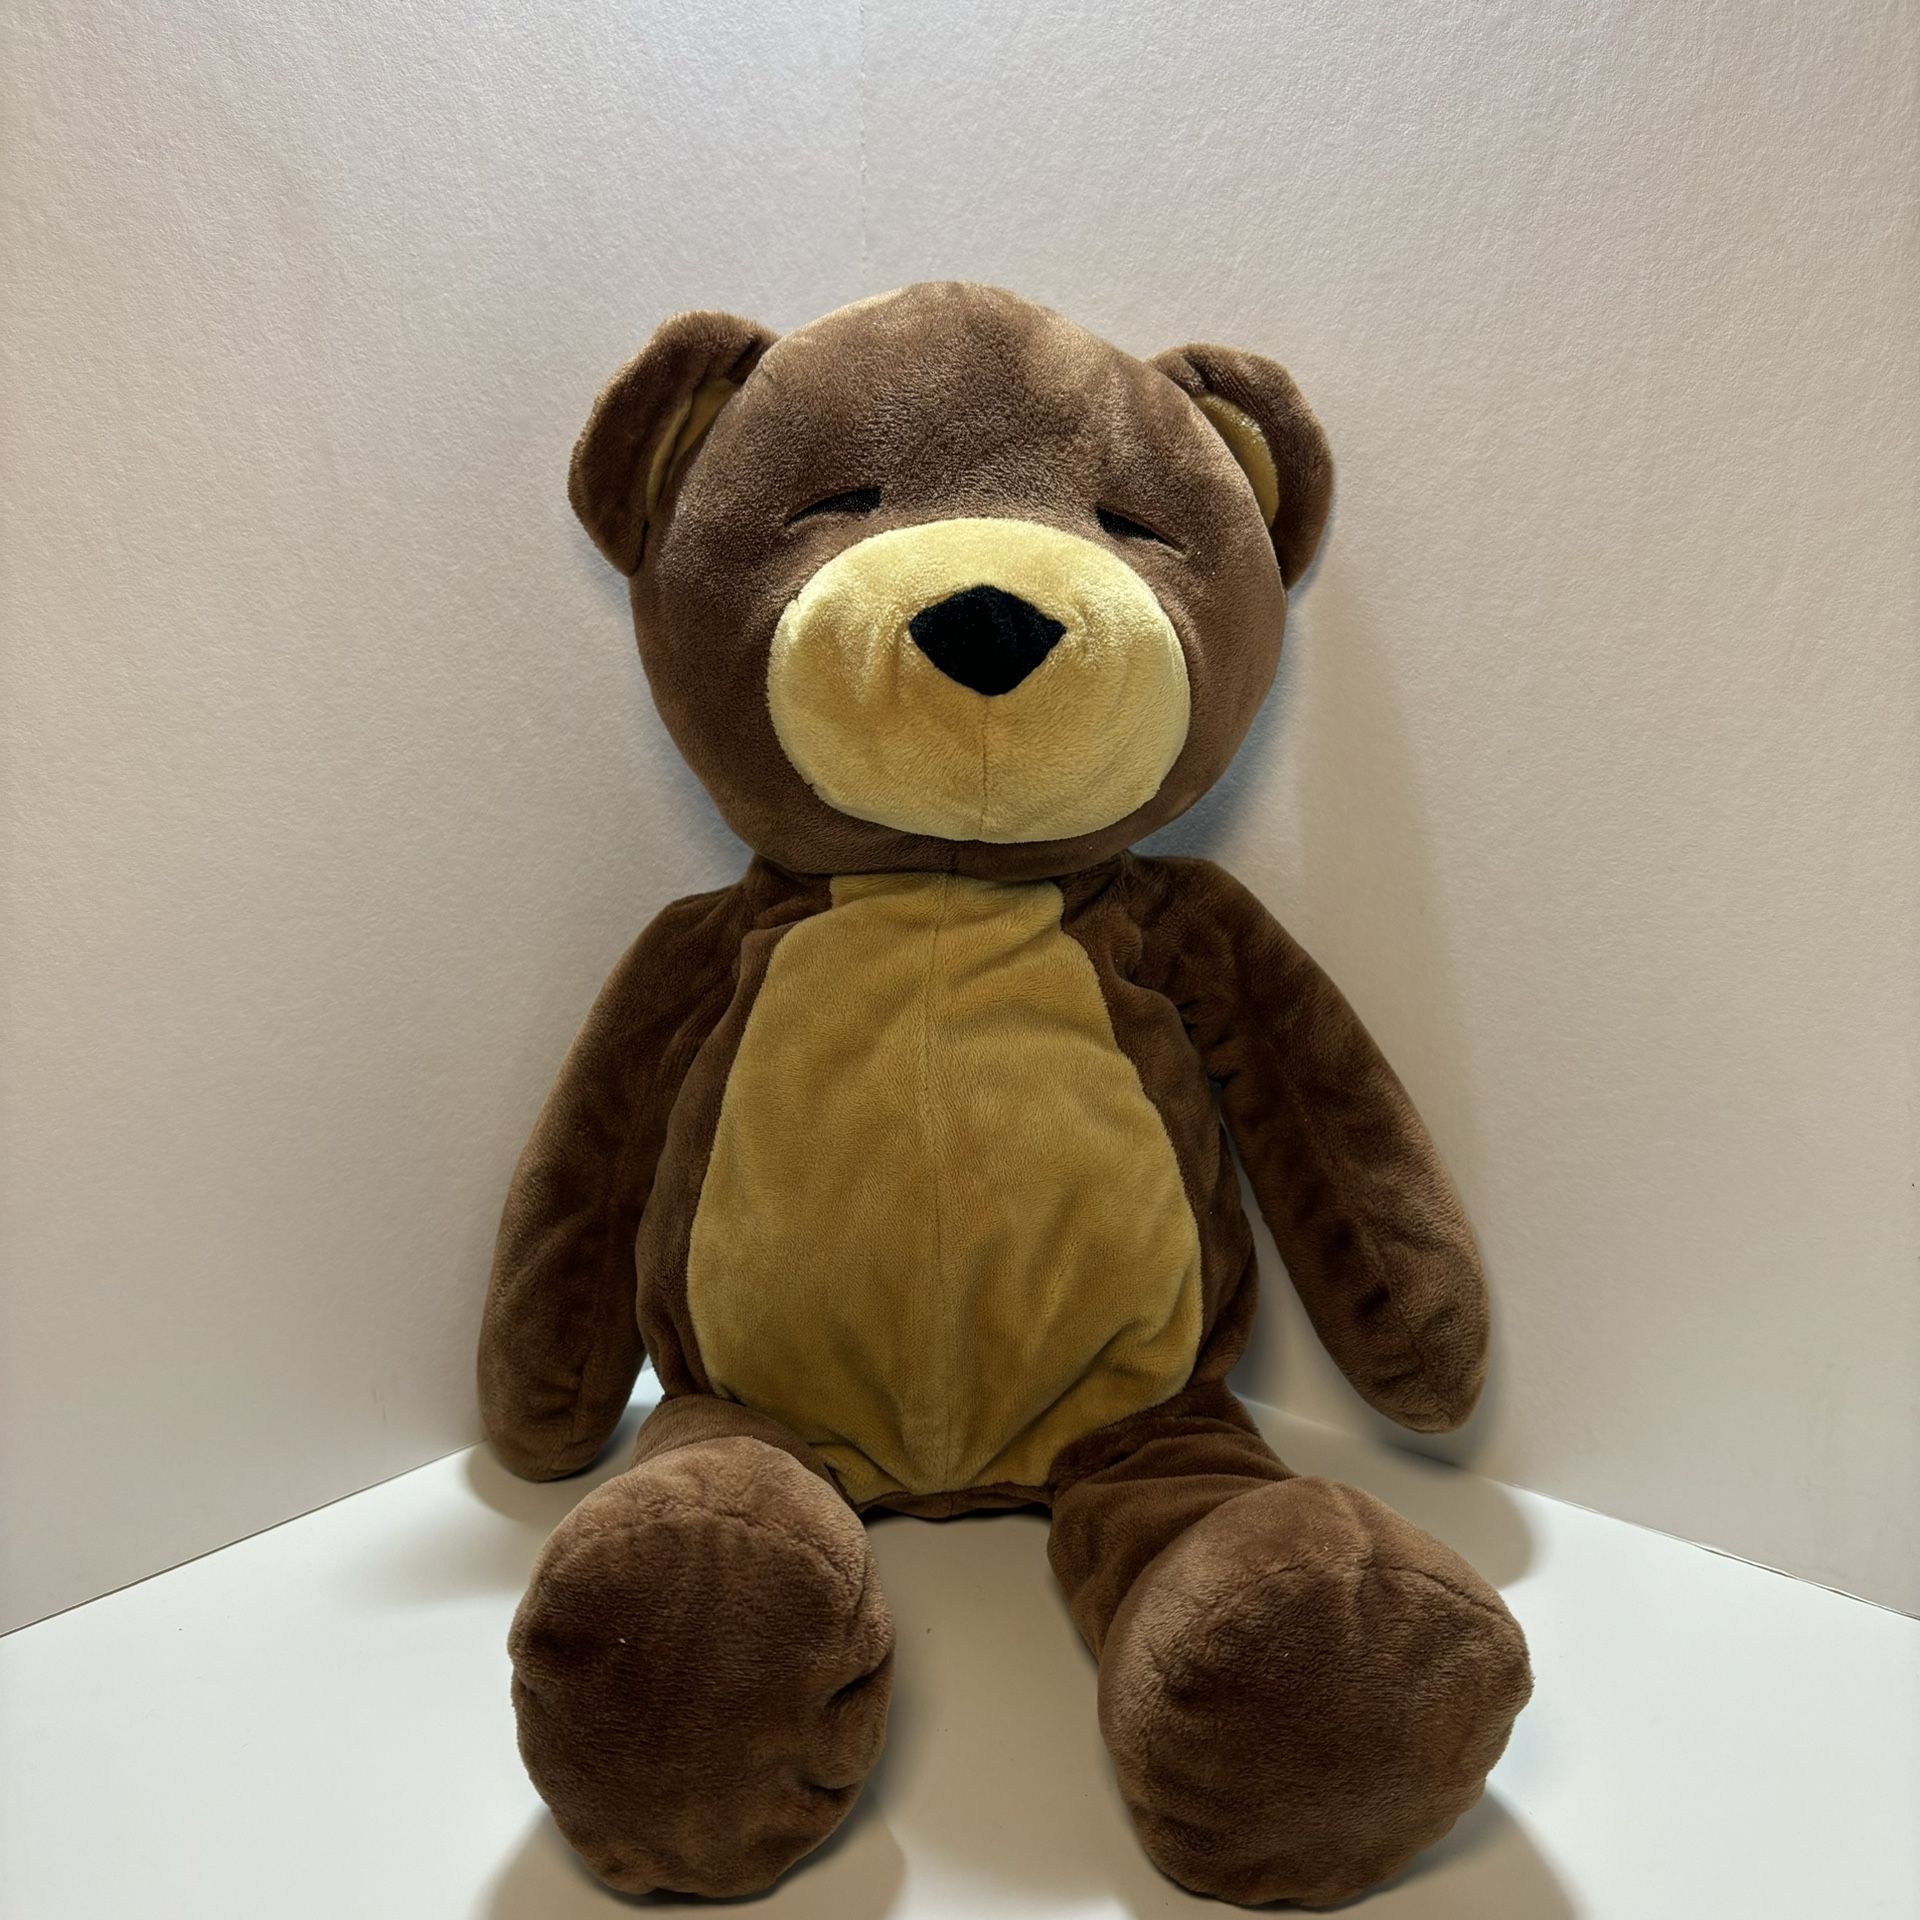 15" Manhattan Toy Company Sleeping Liam Brown Tan Teddy Bear Plush Stuffed 2015